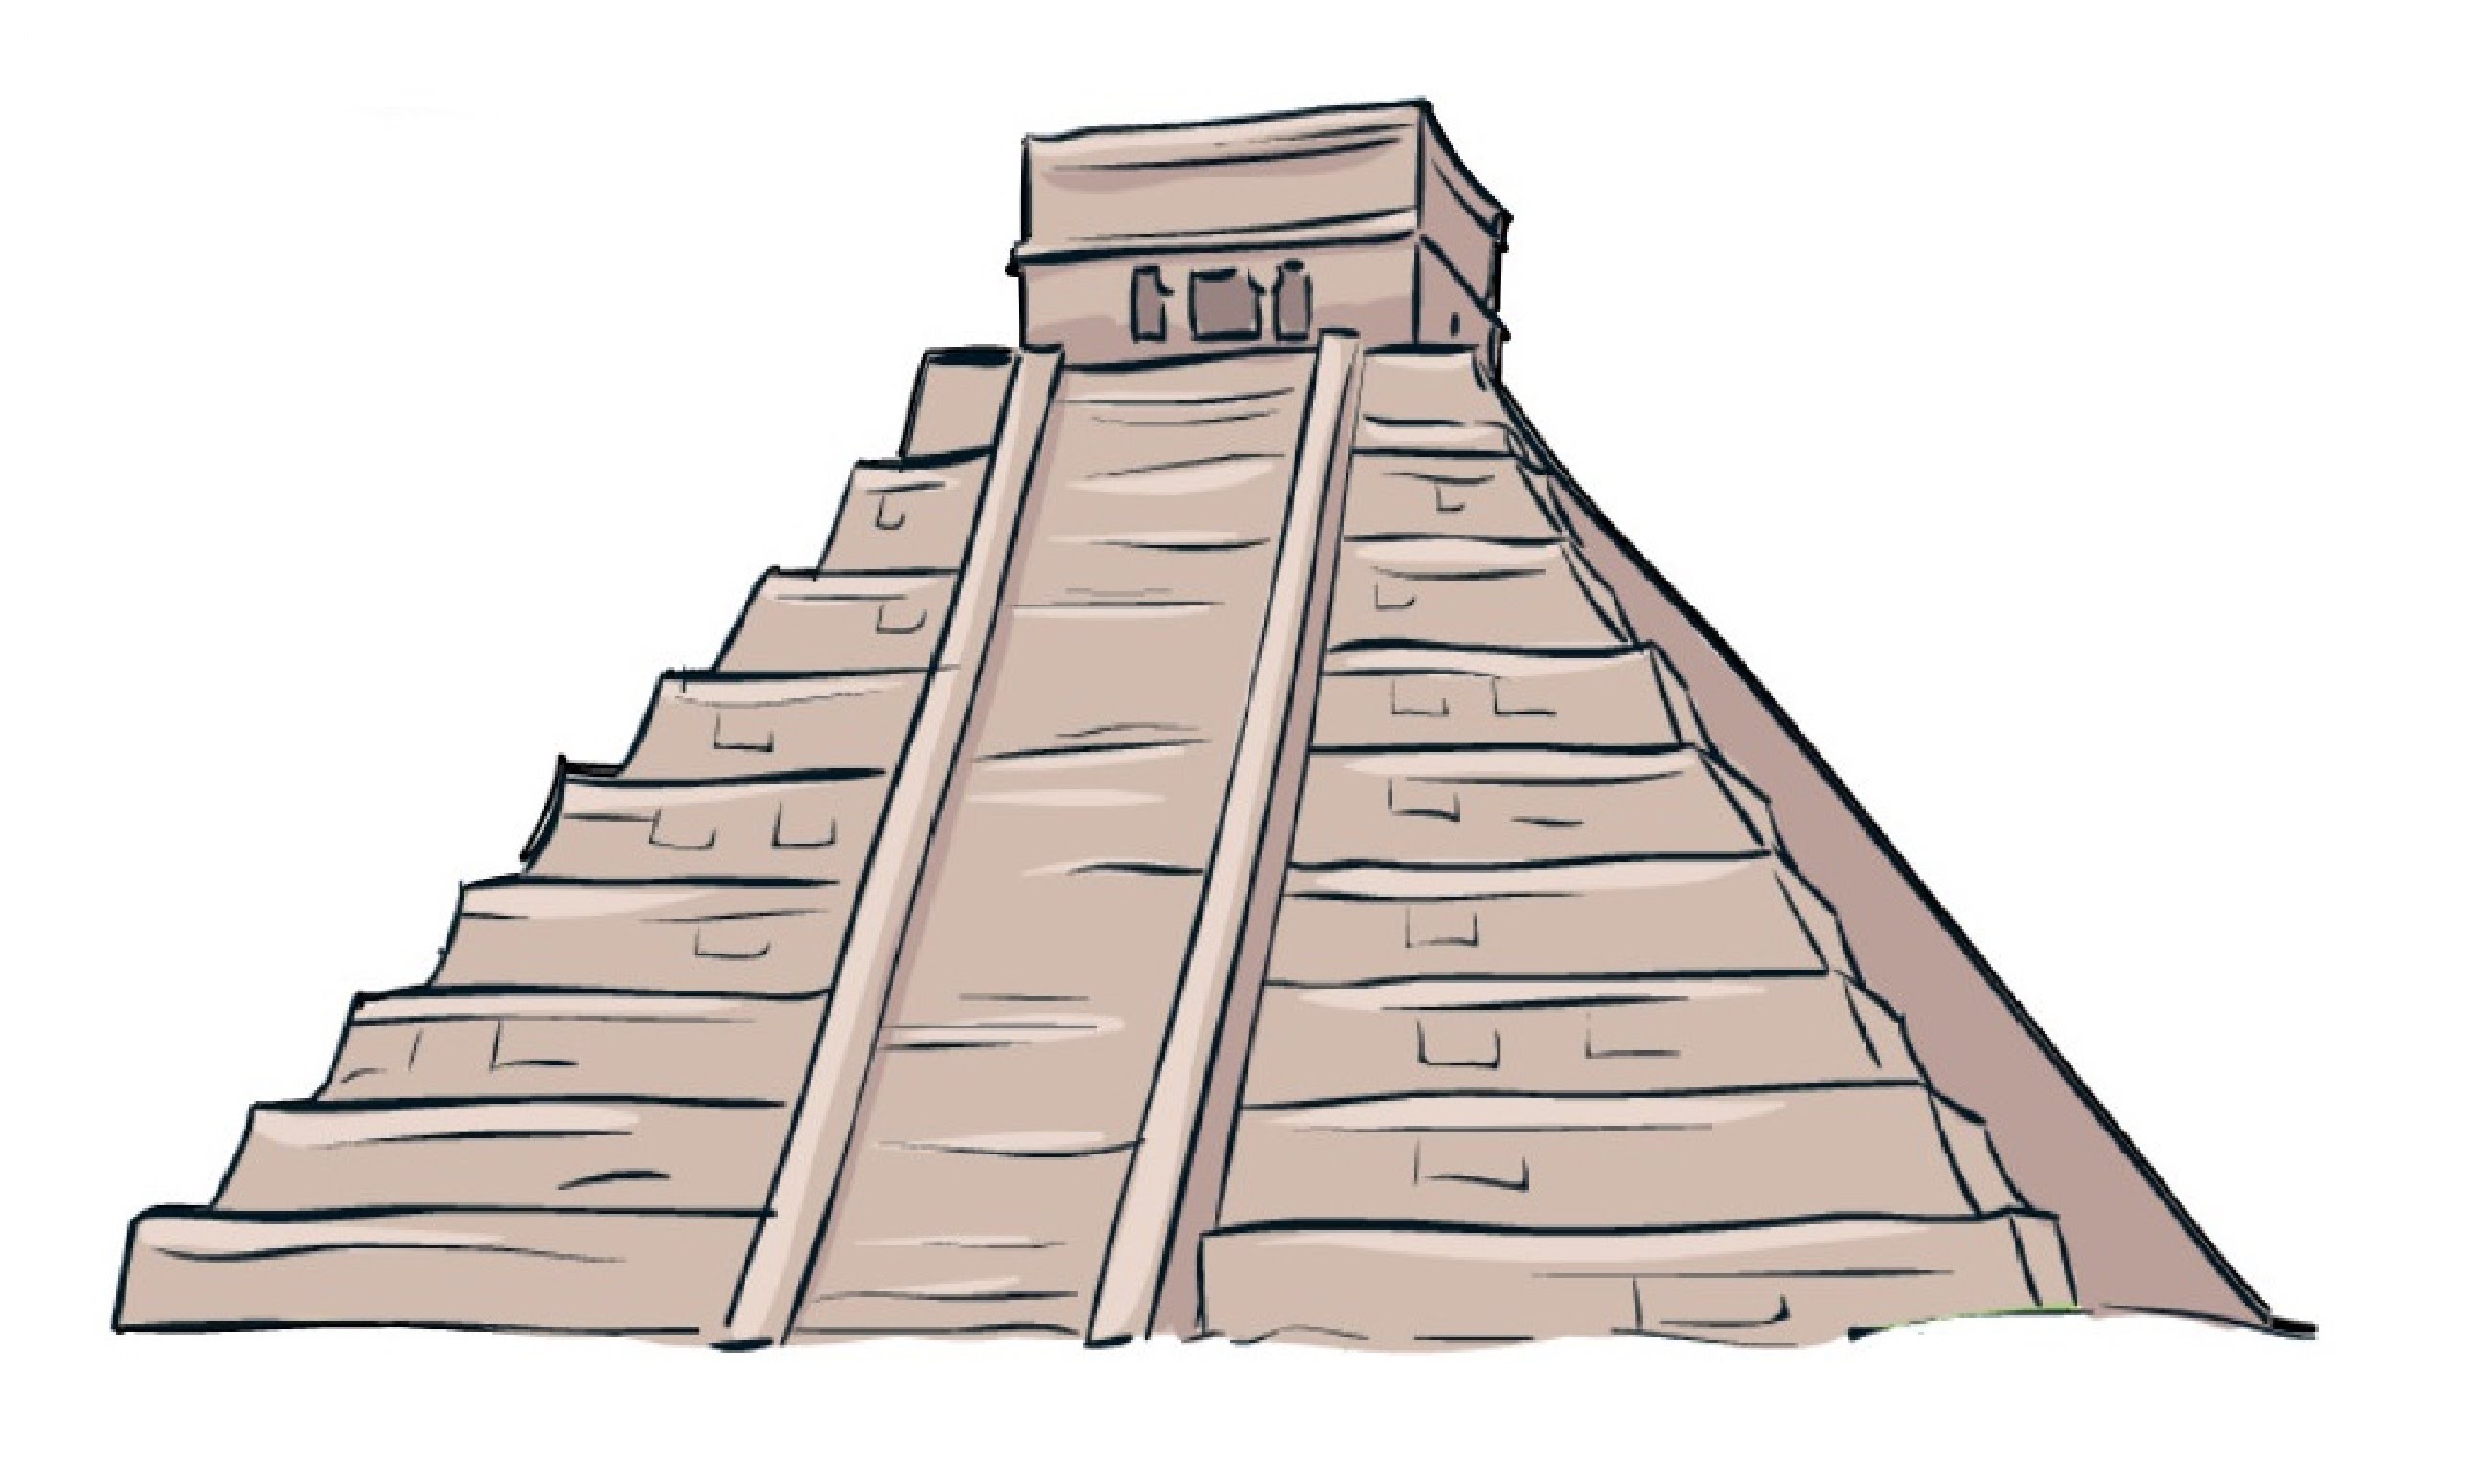 Aztec Pyramid Drawing at GetDrawings Free download